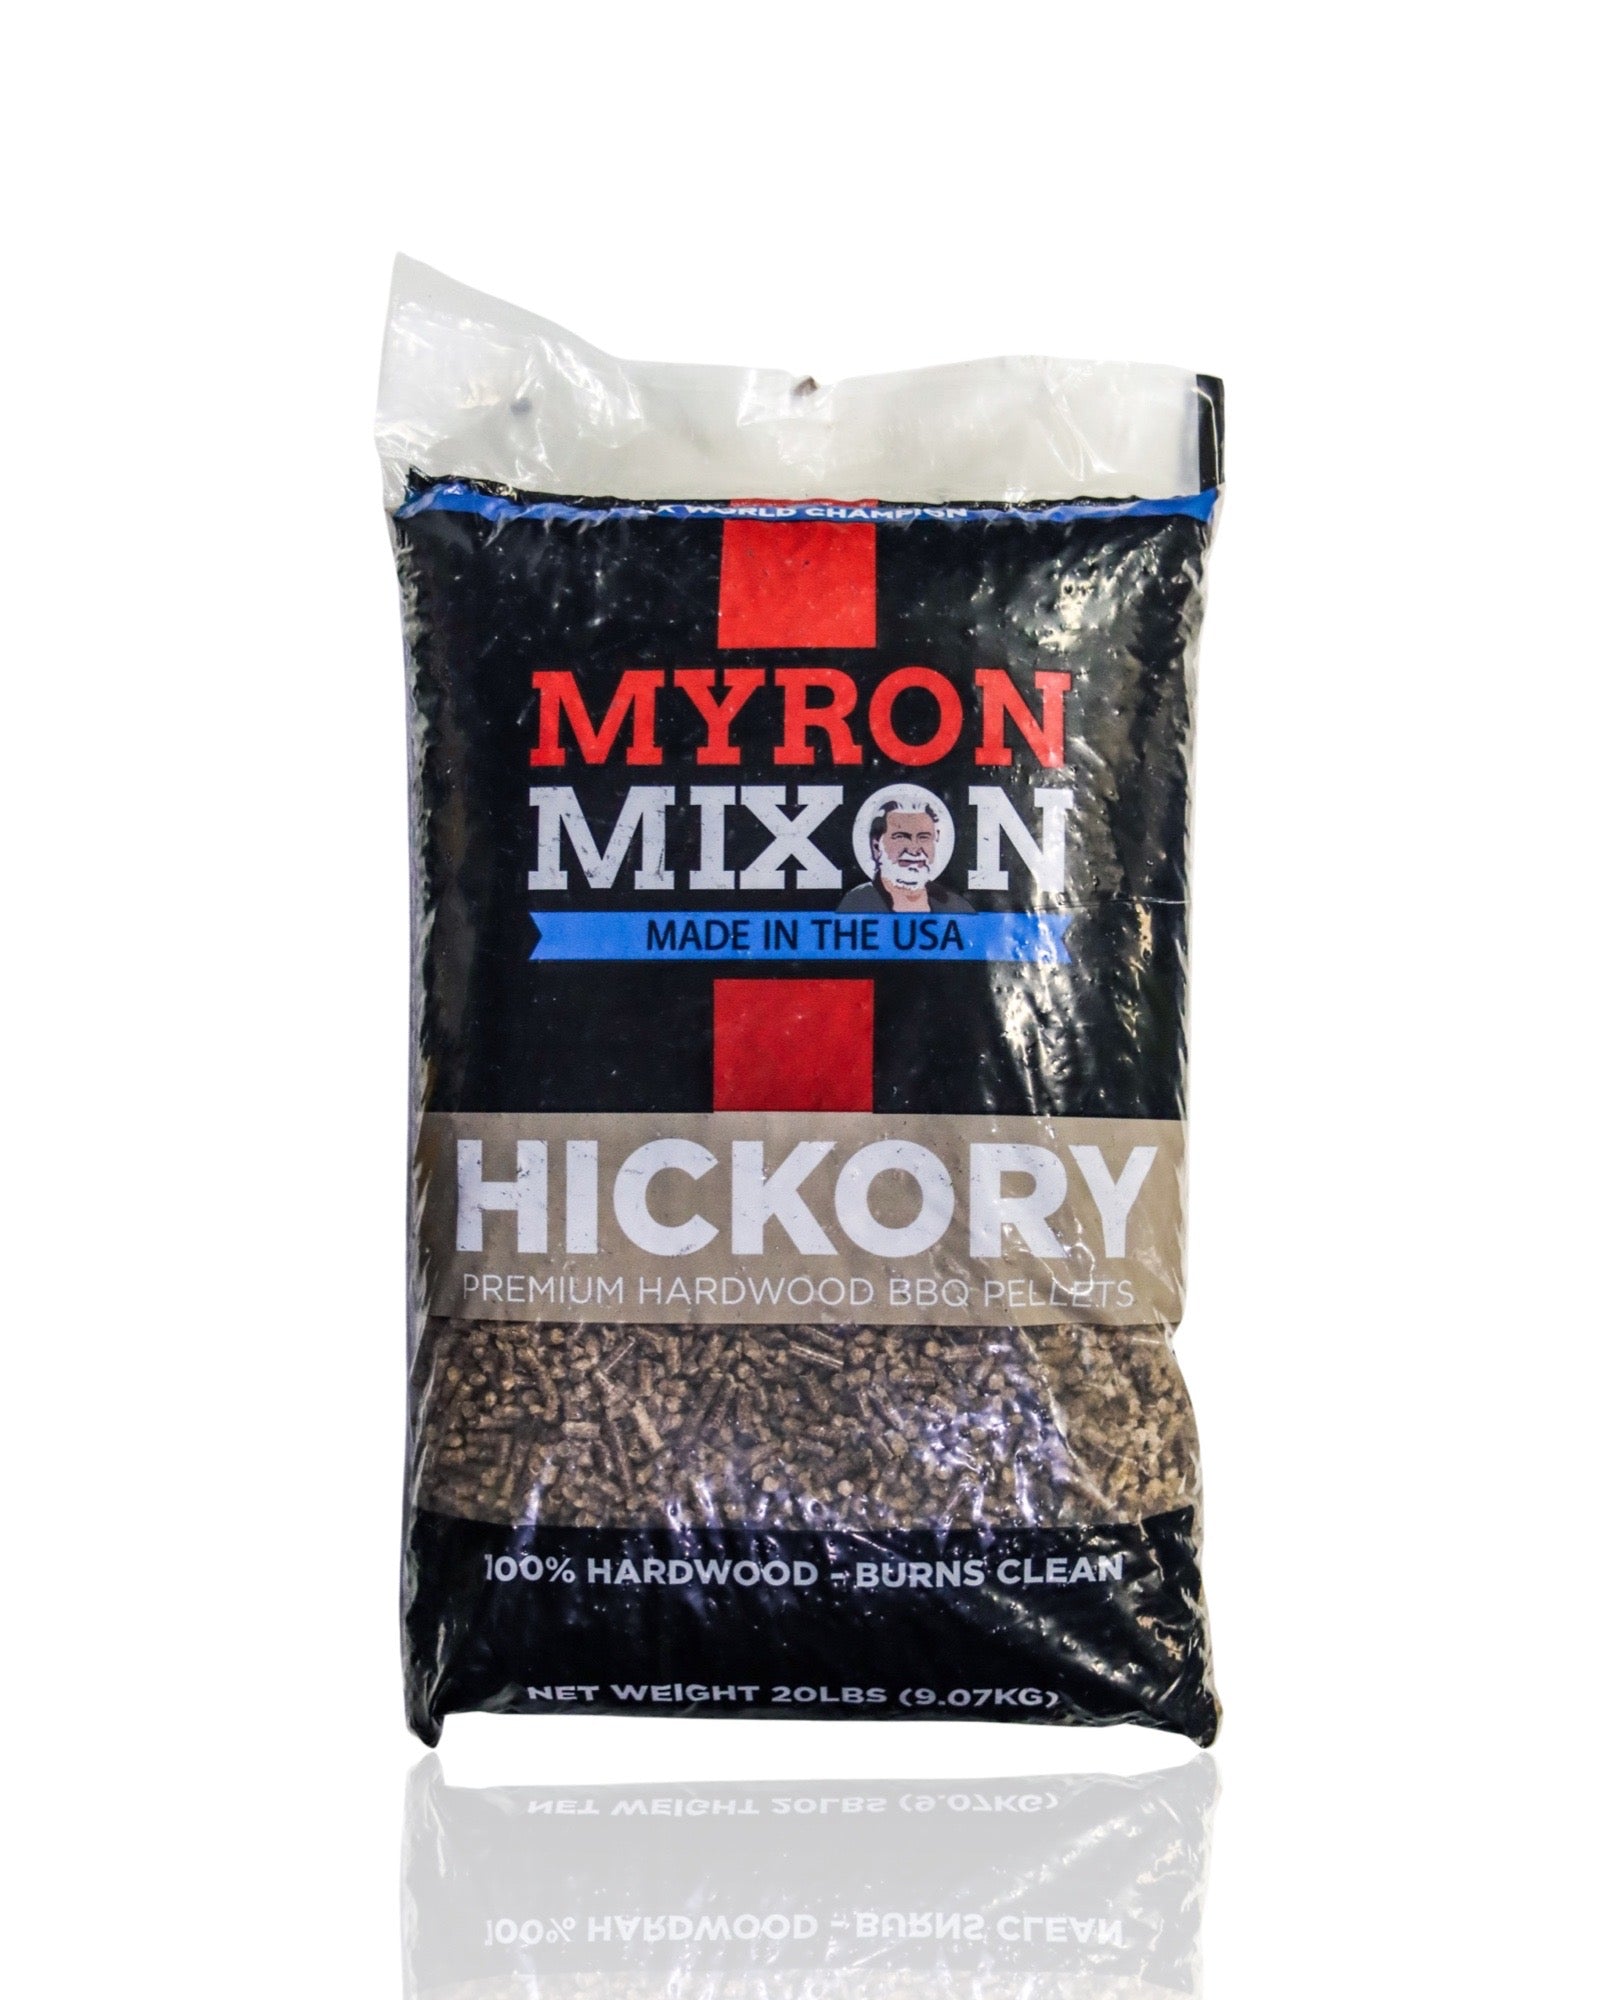 Myron Mixon Premium Hardwood Pellets - 20lb